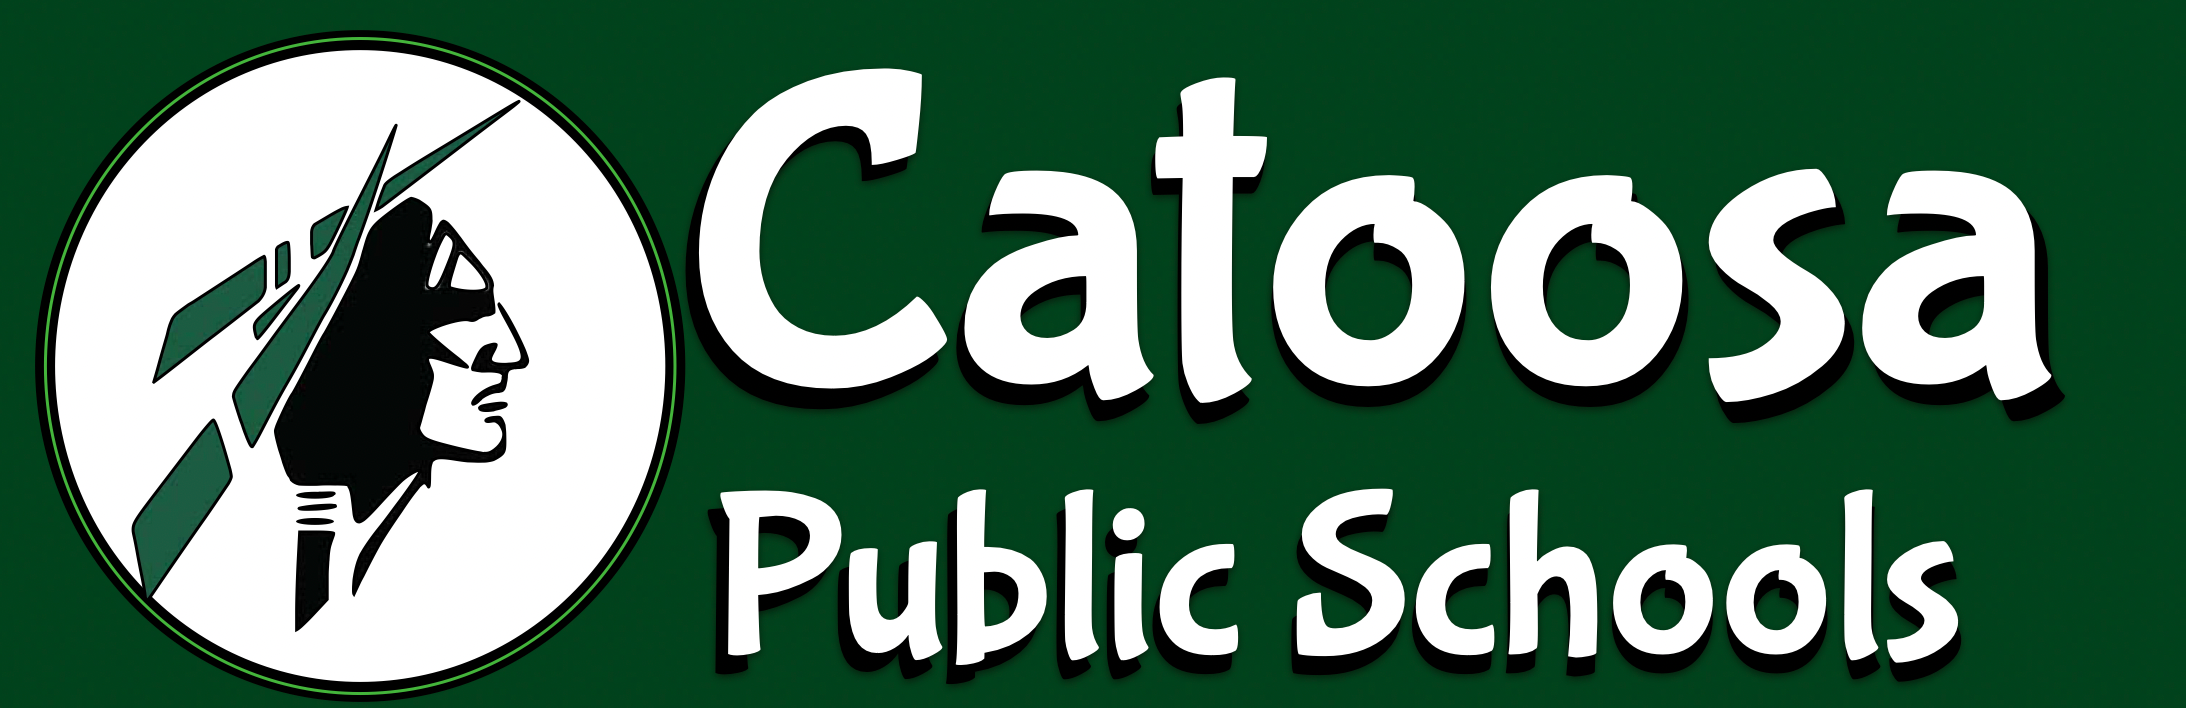 Calendar Catoosa Public Schools